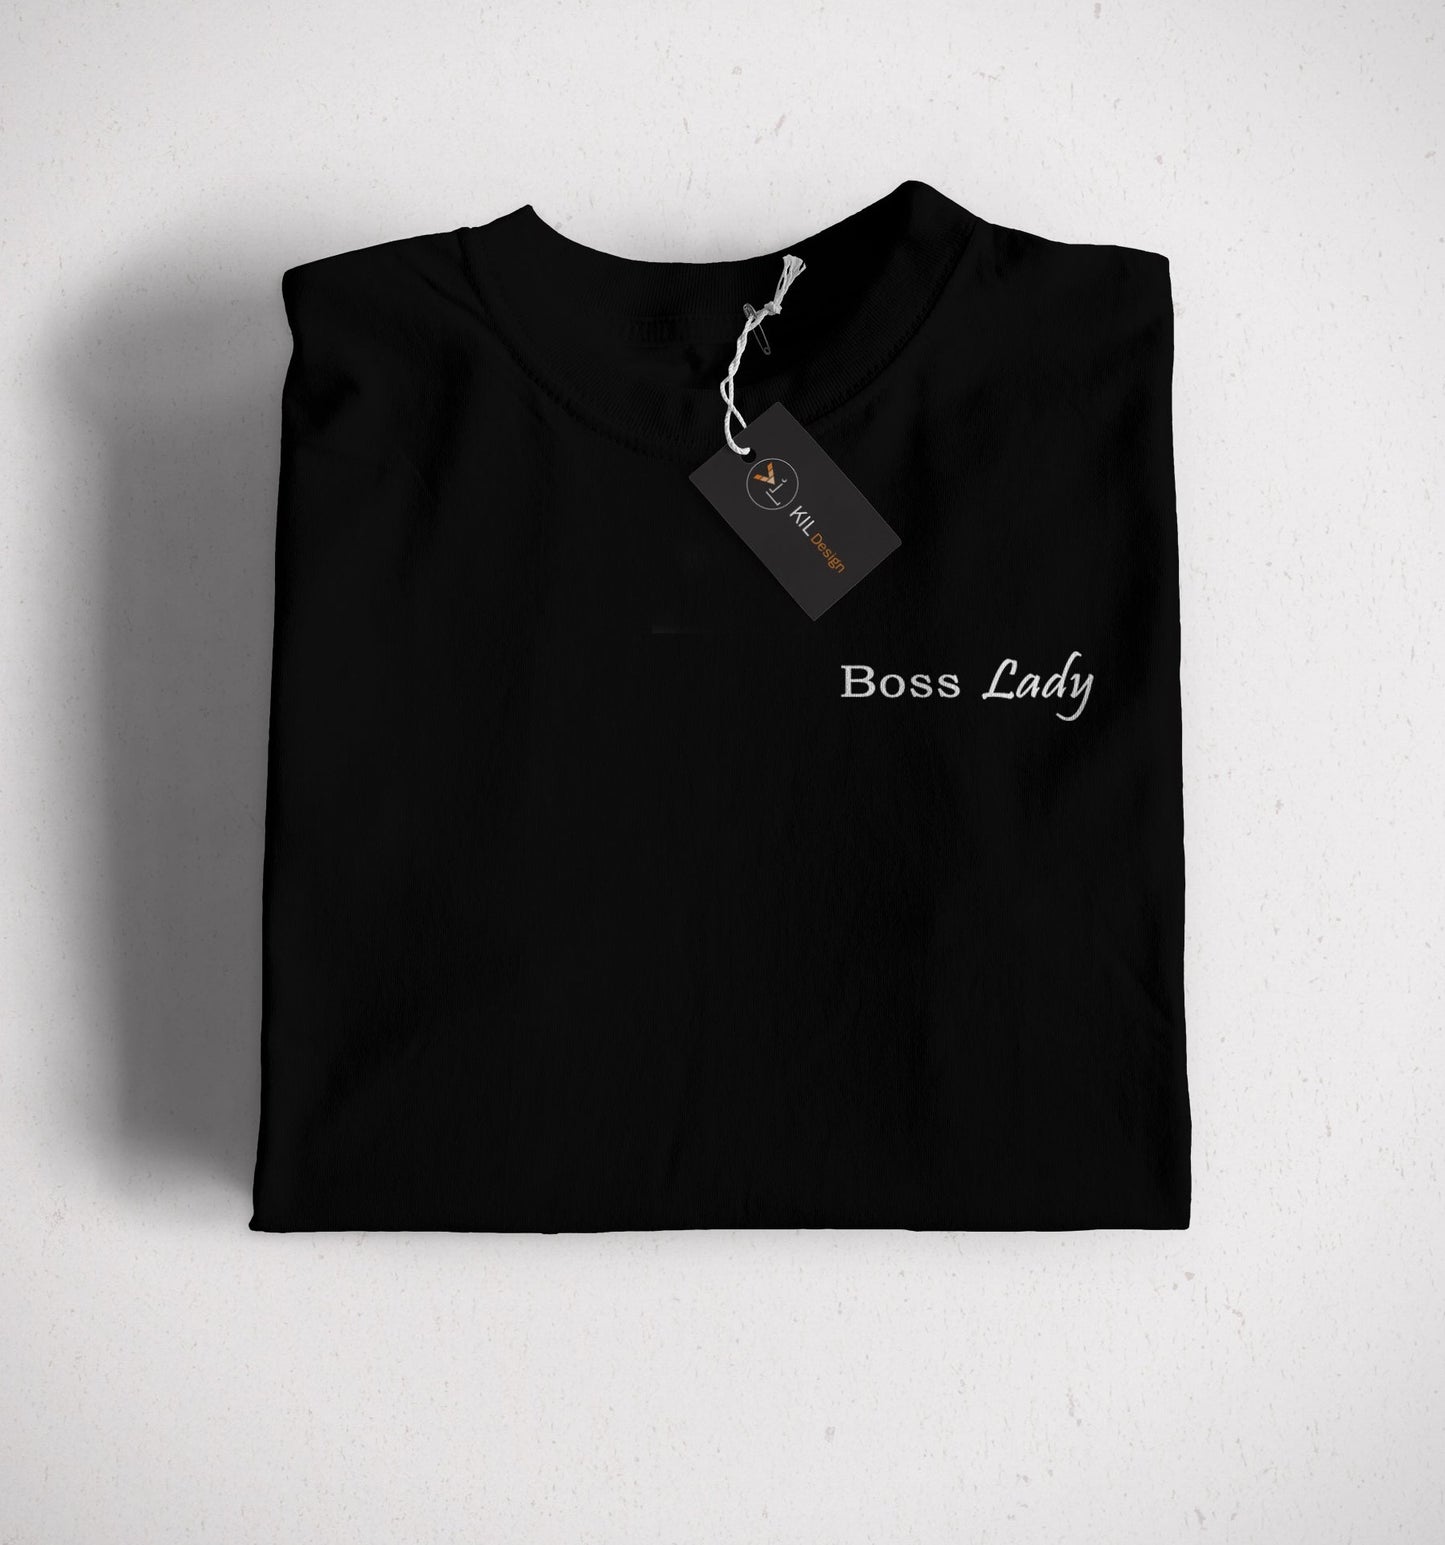 Maglietta con scritta "Boss Lady"